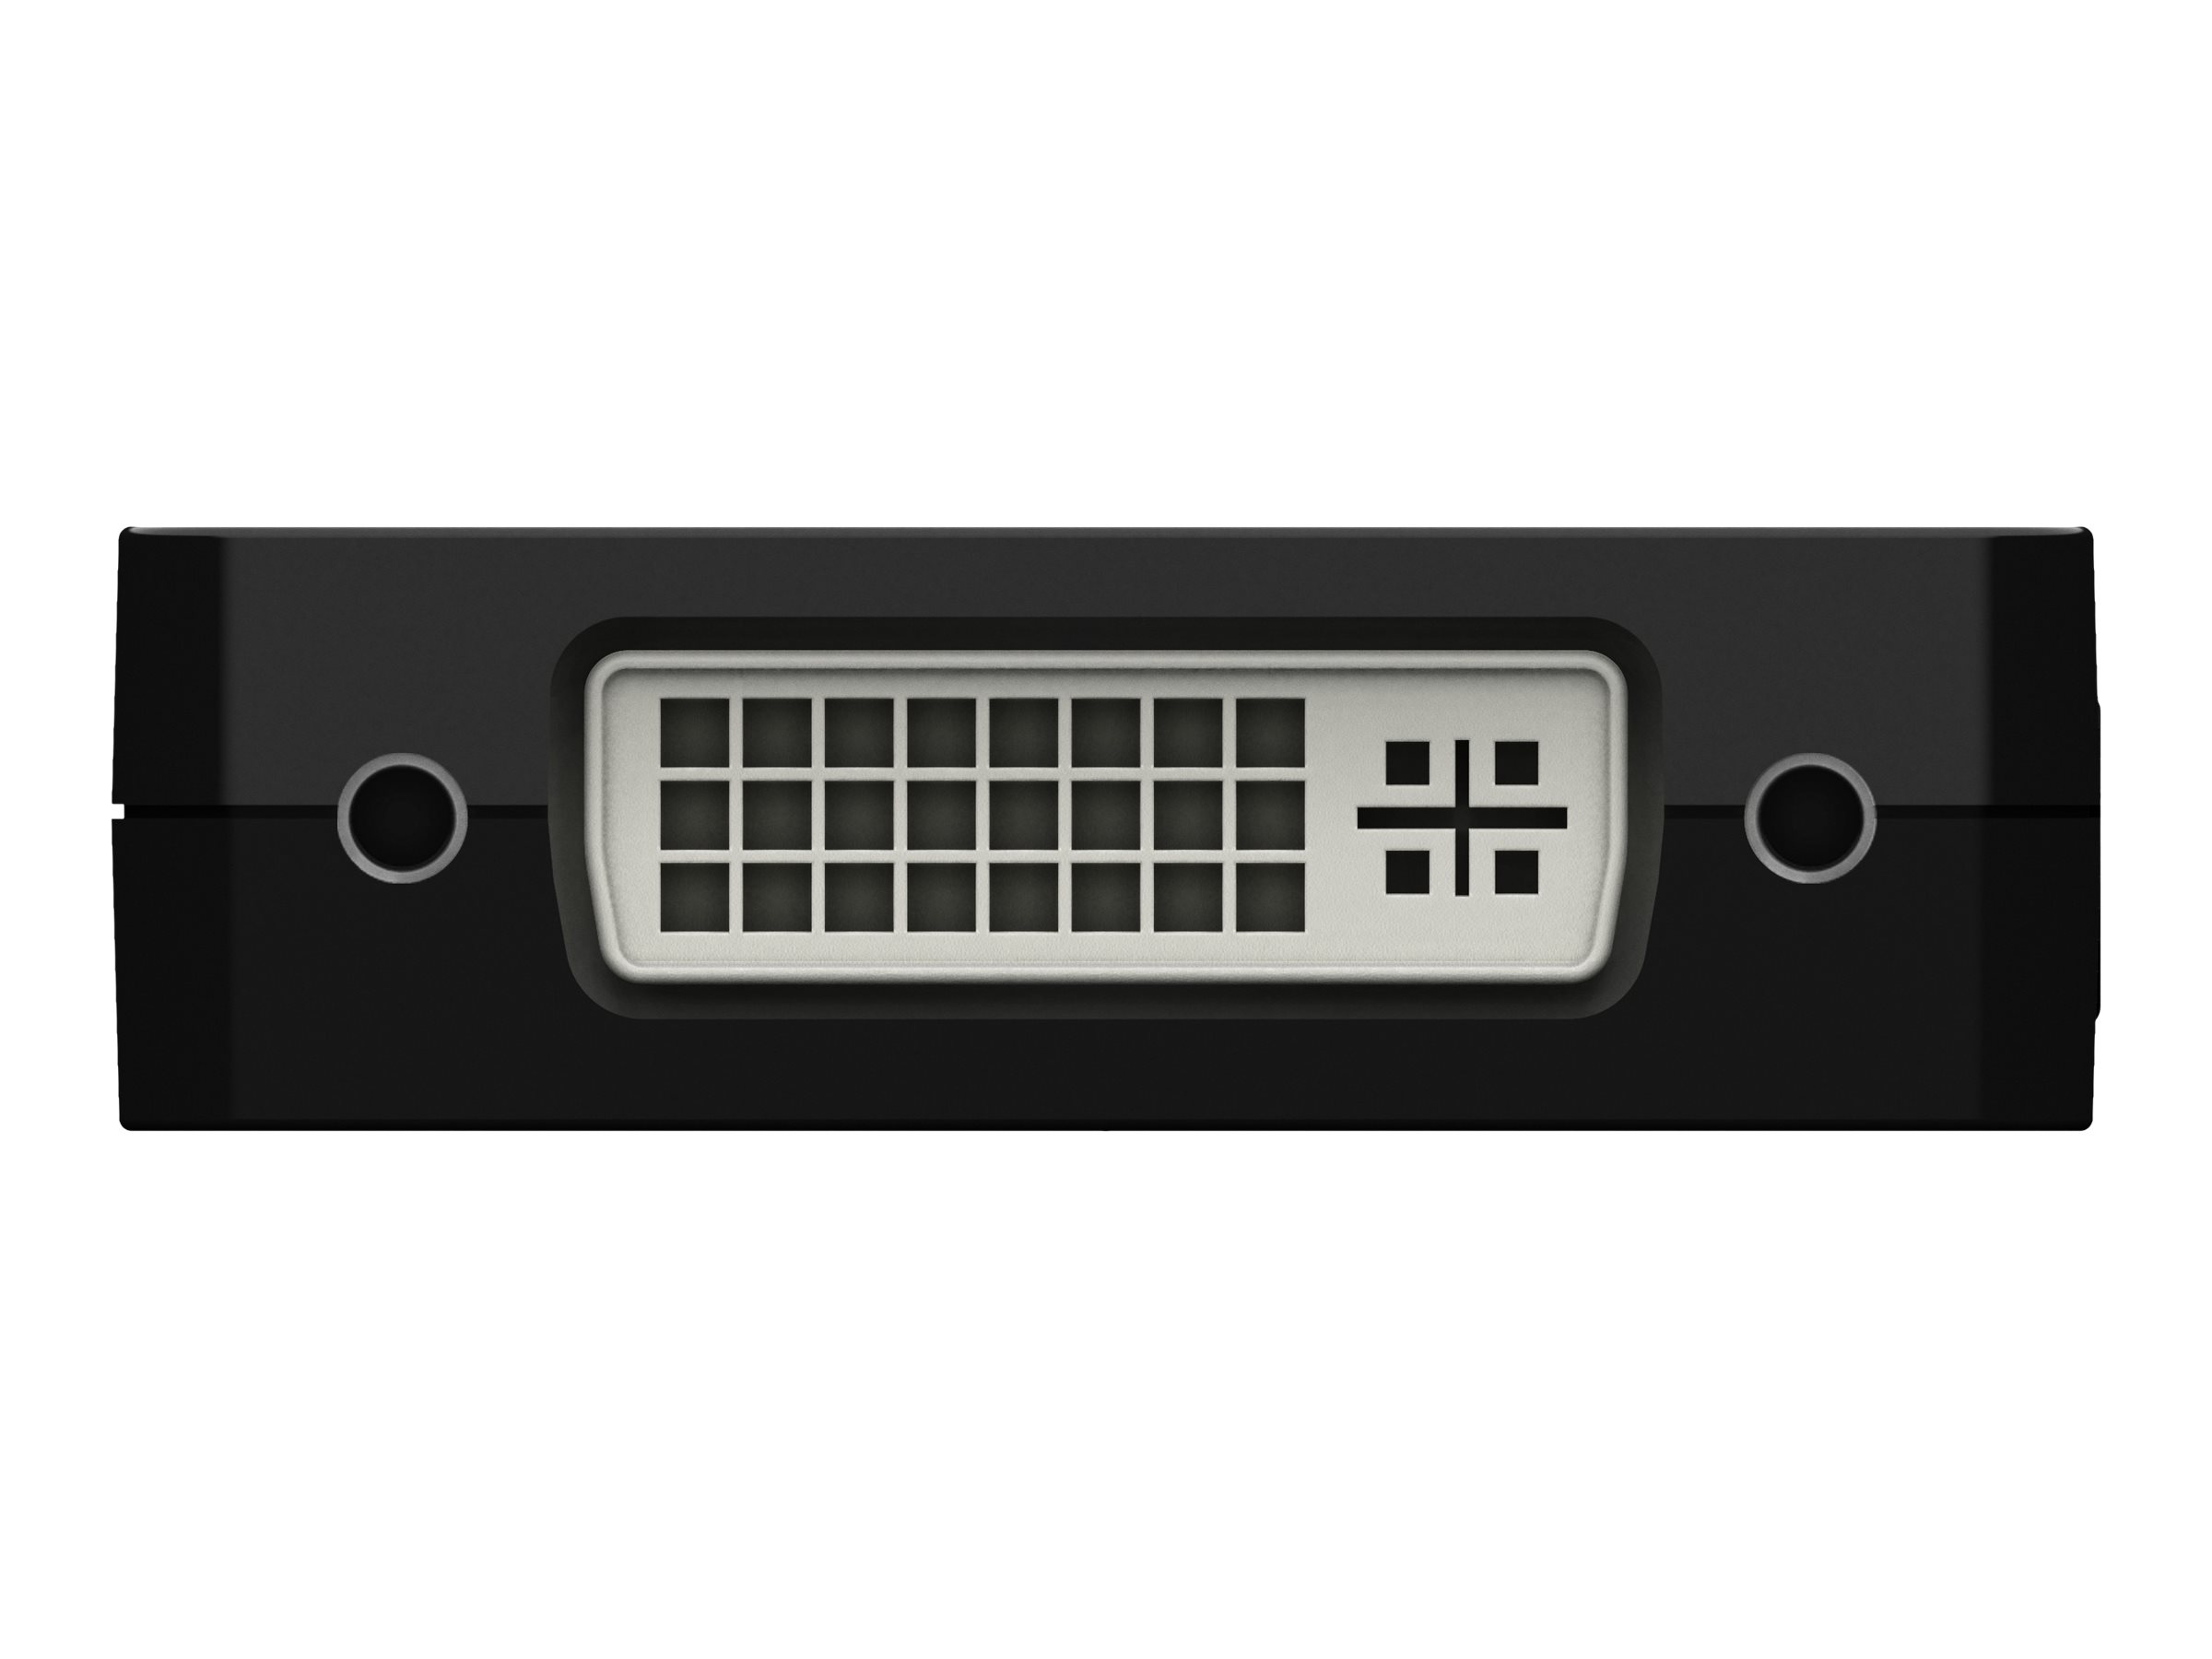 Belkin - Adaptateur vidéo - 24 pin USB-C mâle pour HD-15 (VGA), DVI-I, HDMI, DisplayPort femelle - noir - support 4K - AVC003btBK - Accessoires pour téléviseurs